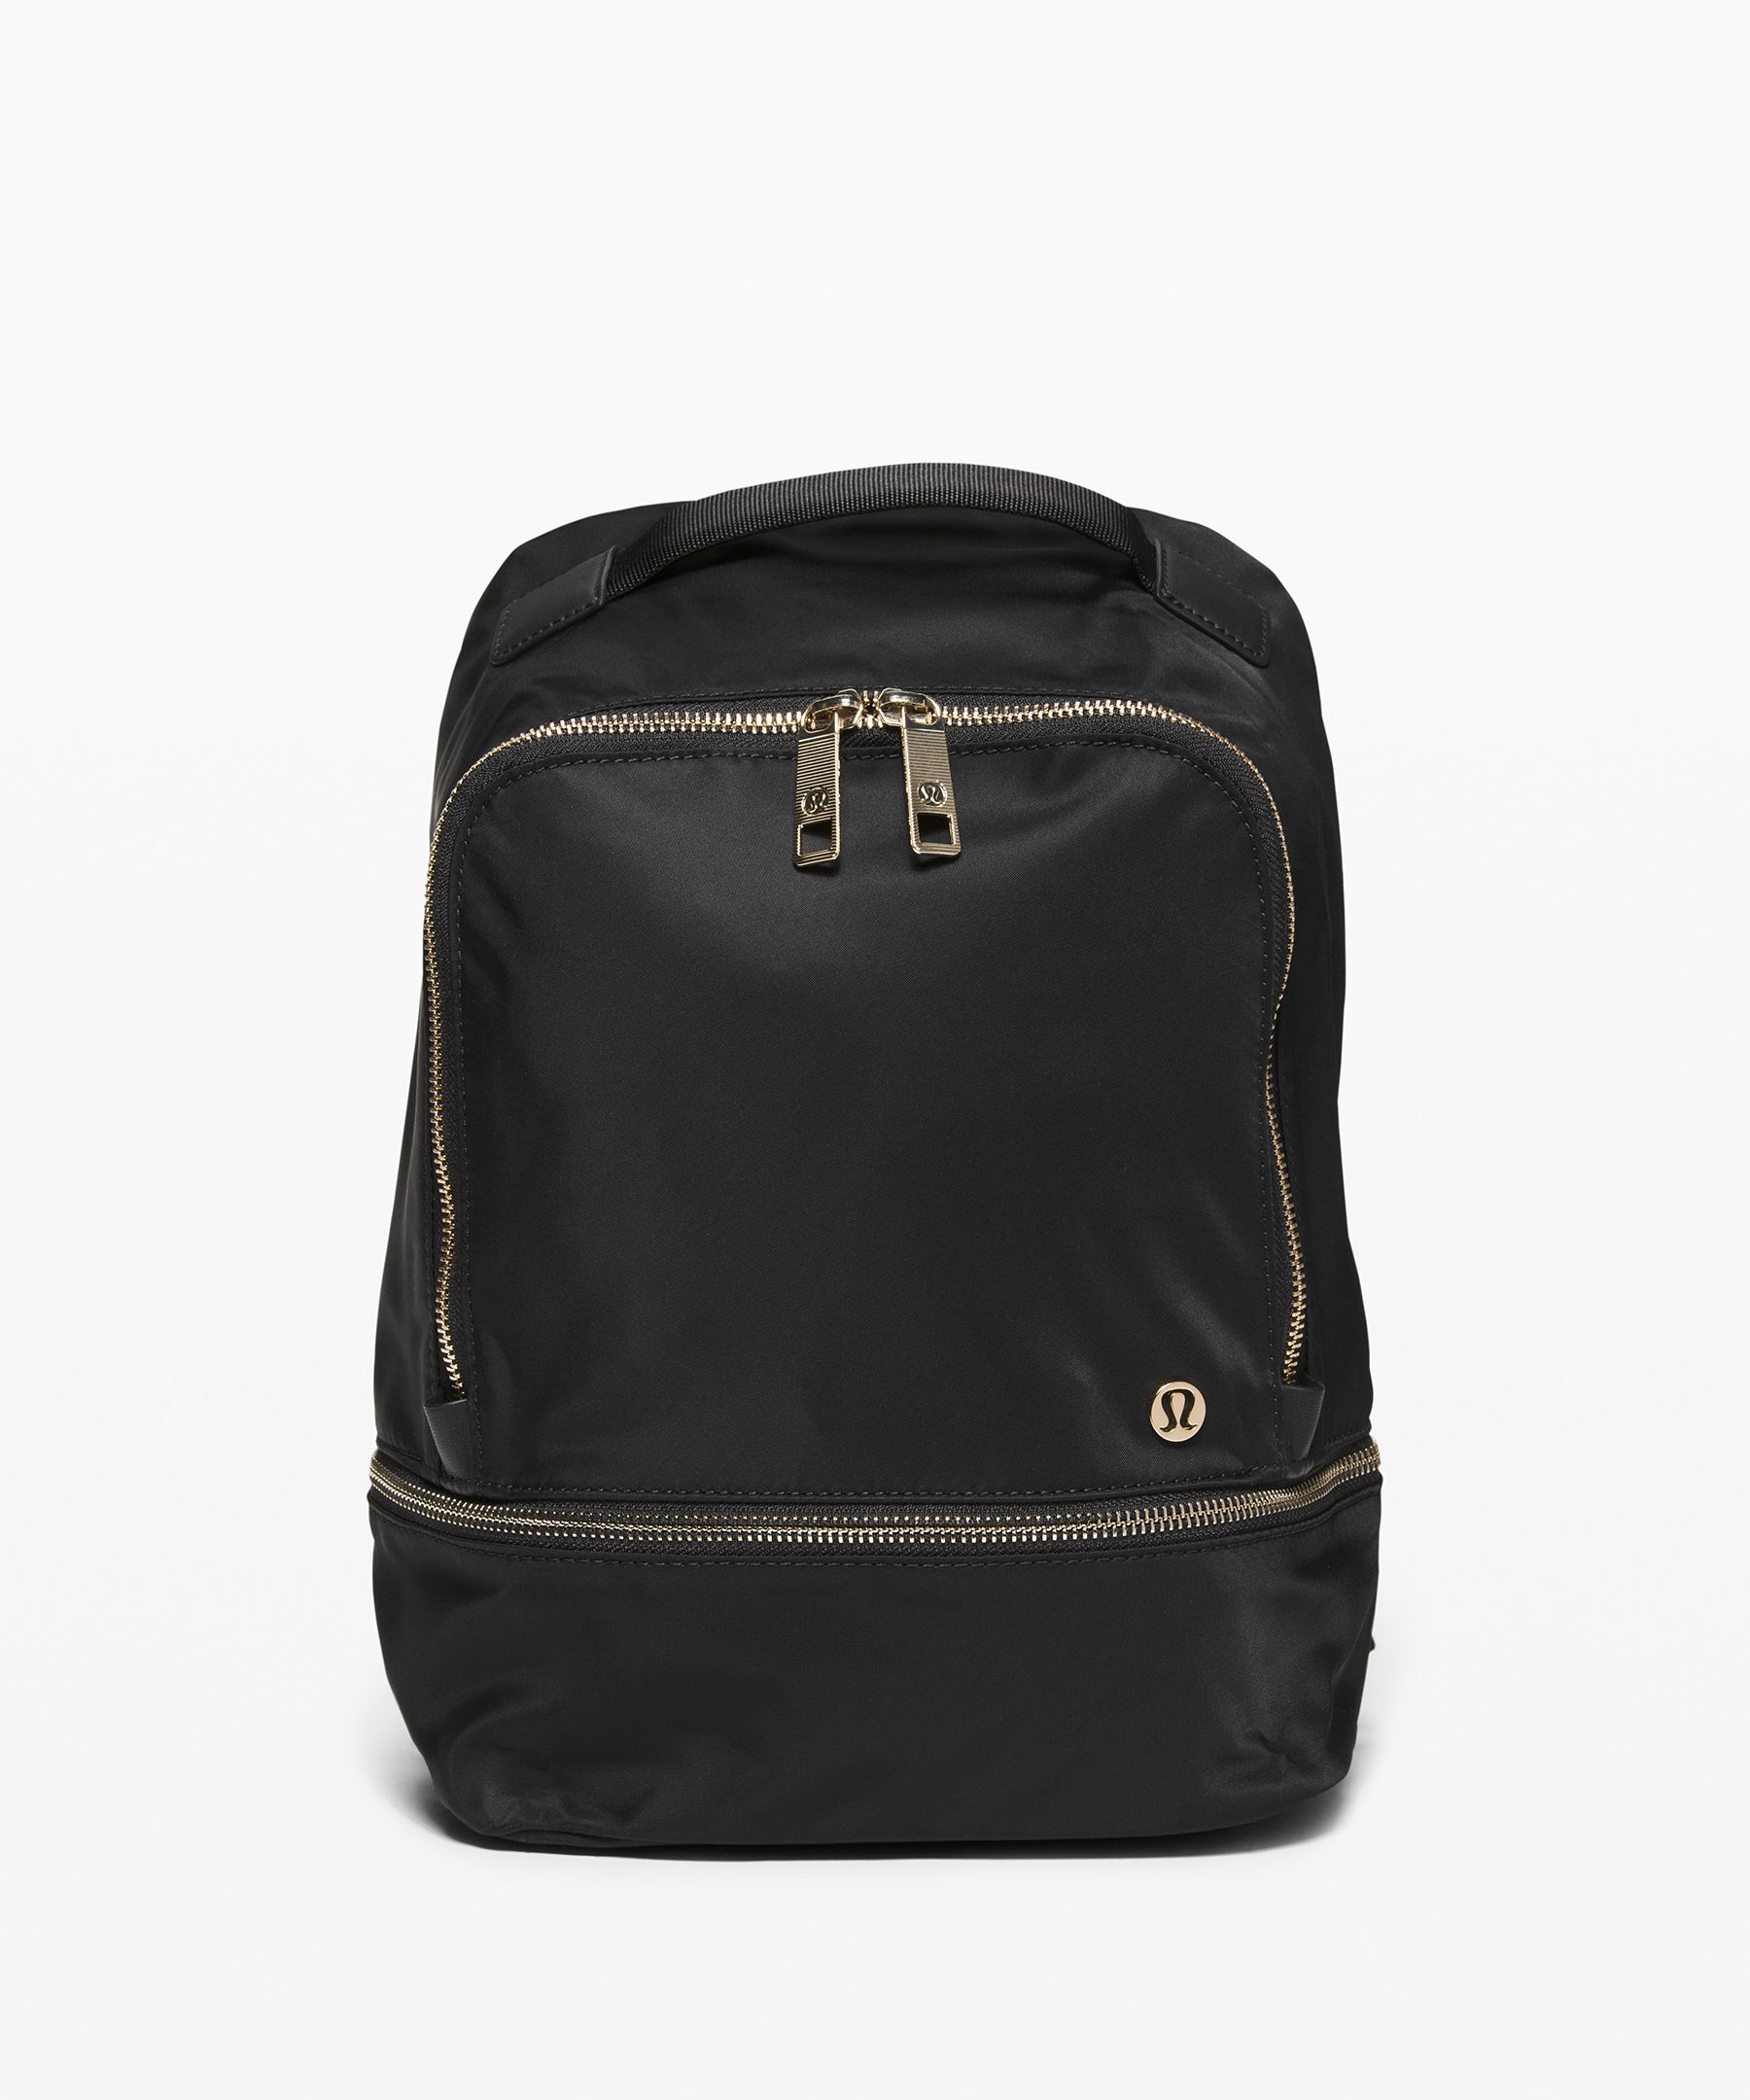 lululemon backpack for sale